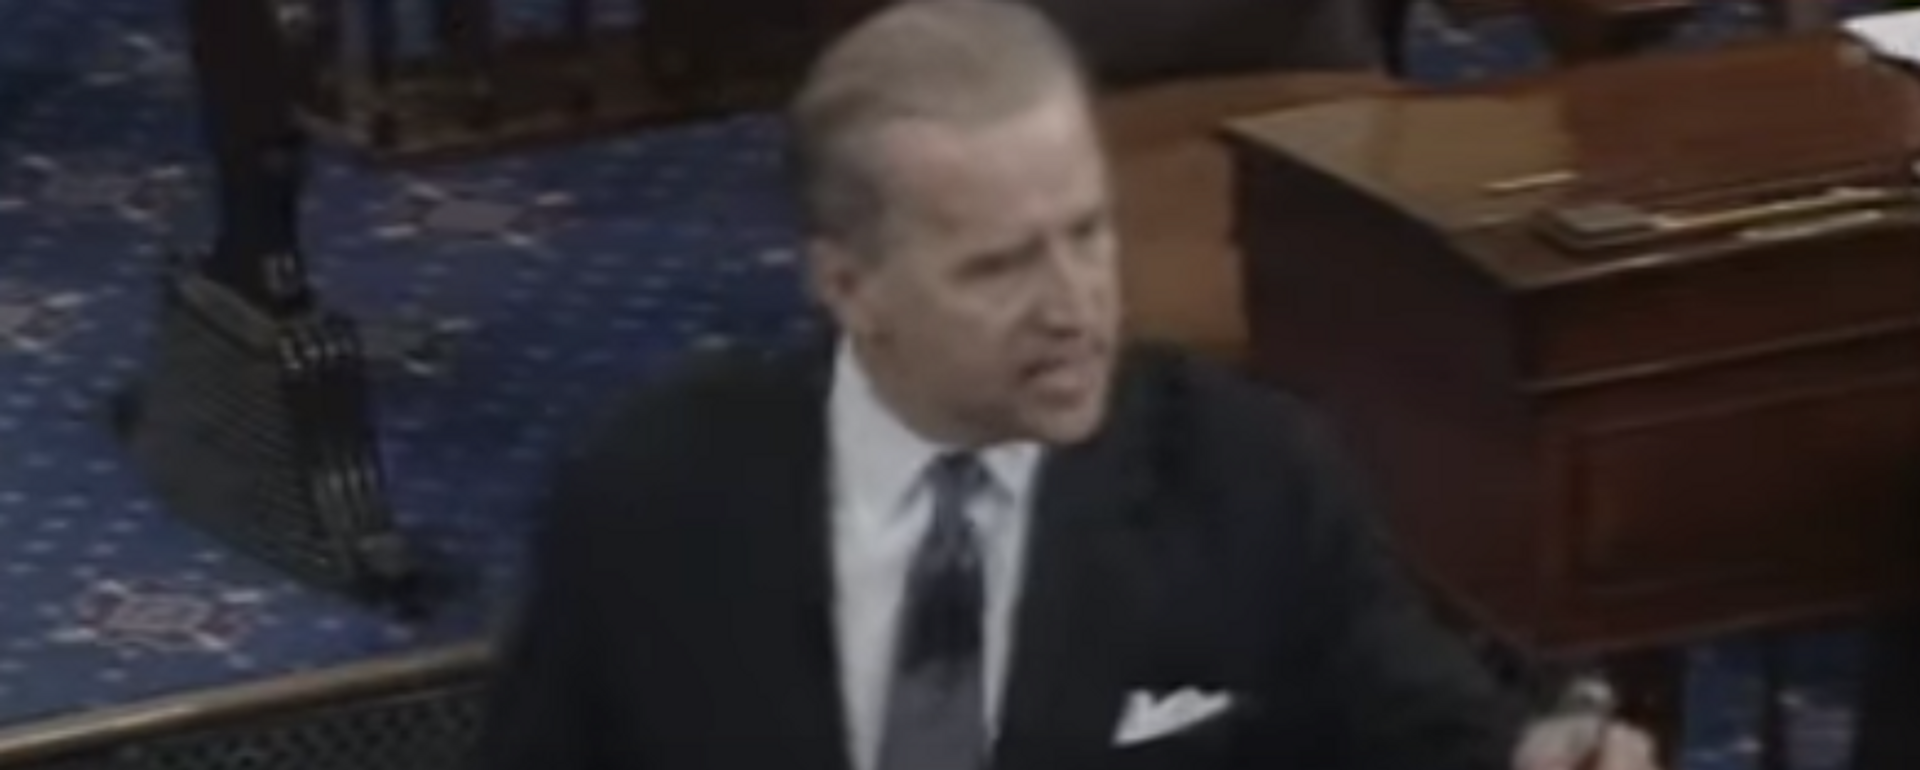 Joe Biden ofrece un discurso ante el Senado en 1994 (archivo) - Sputnik Mundo, 1920, 17.04.2022